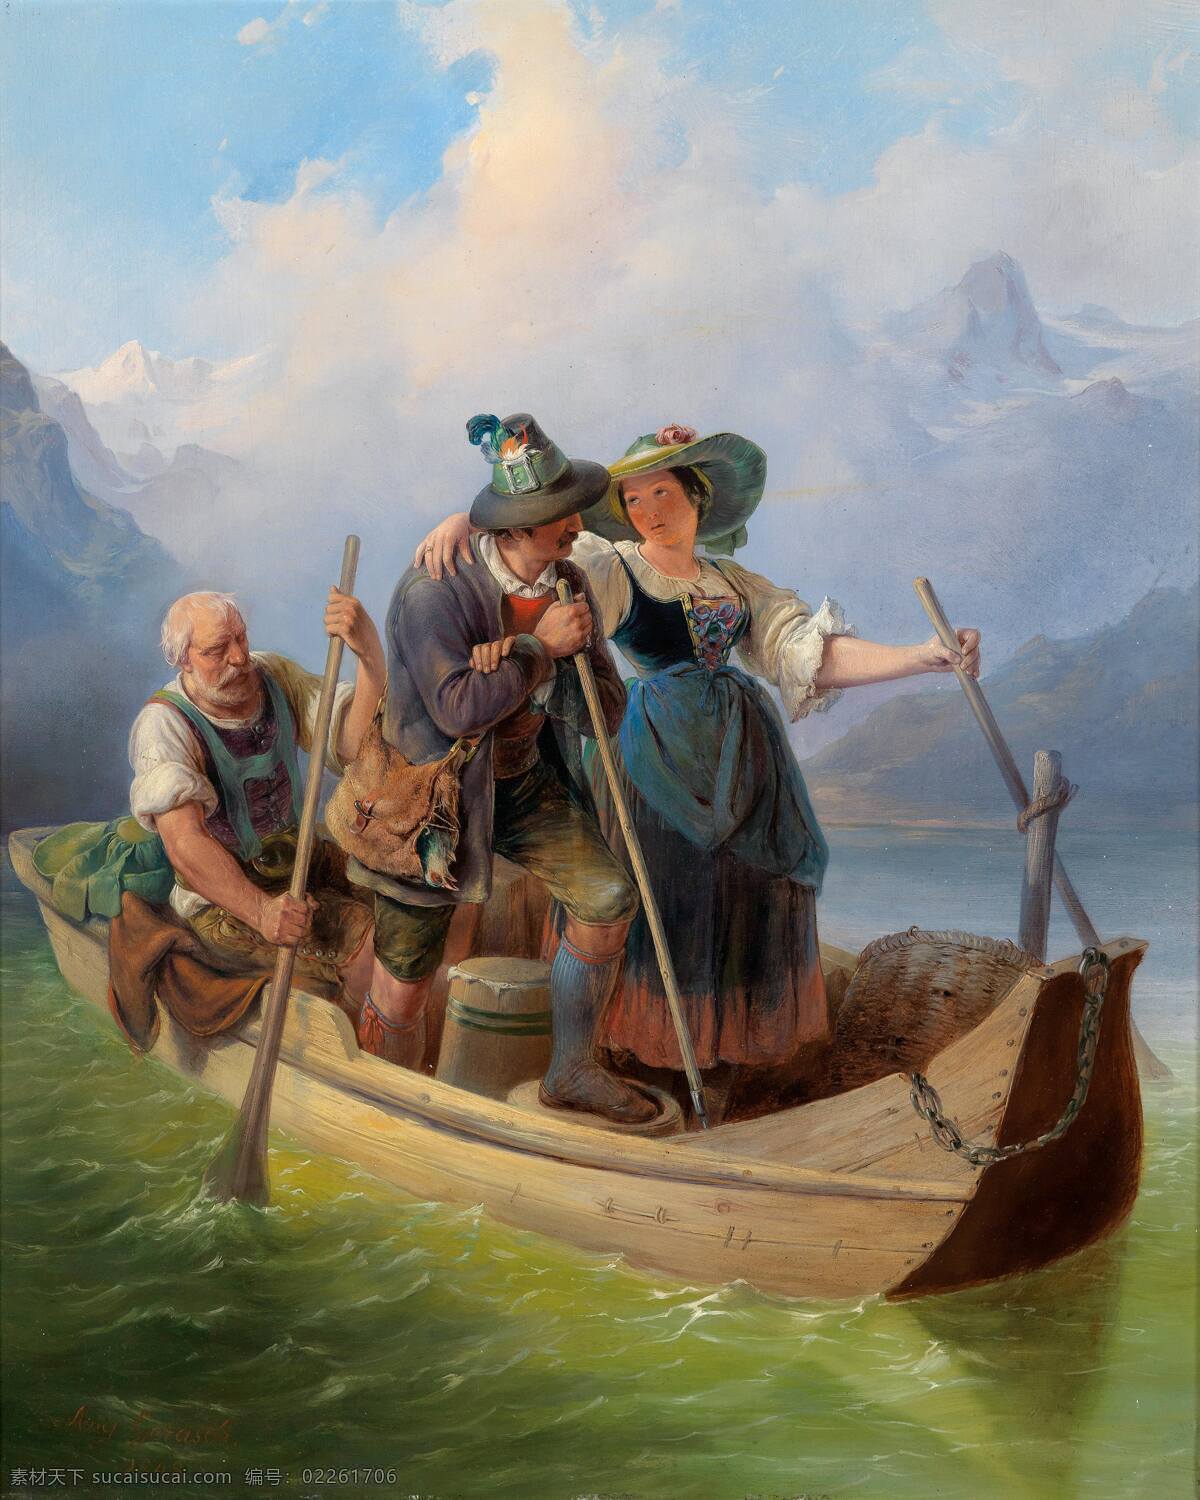 过河 群山环绕 船上 老人划船 一男一女 打情骂俏 19世纪油画 油画 文化艺术 绘画书法